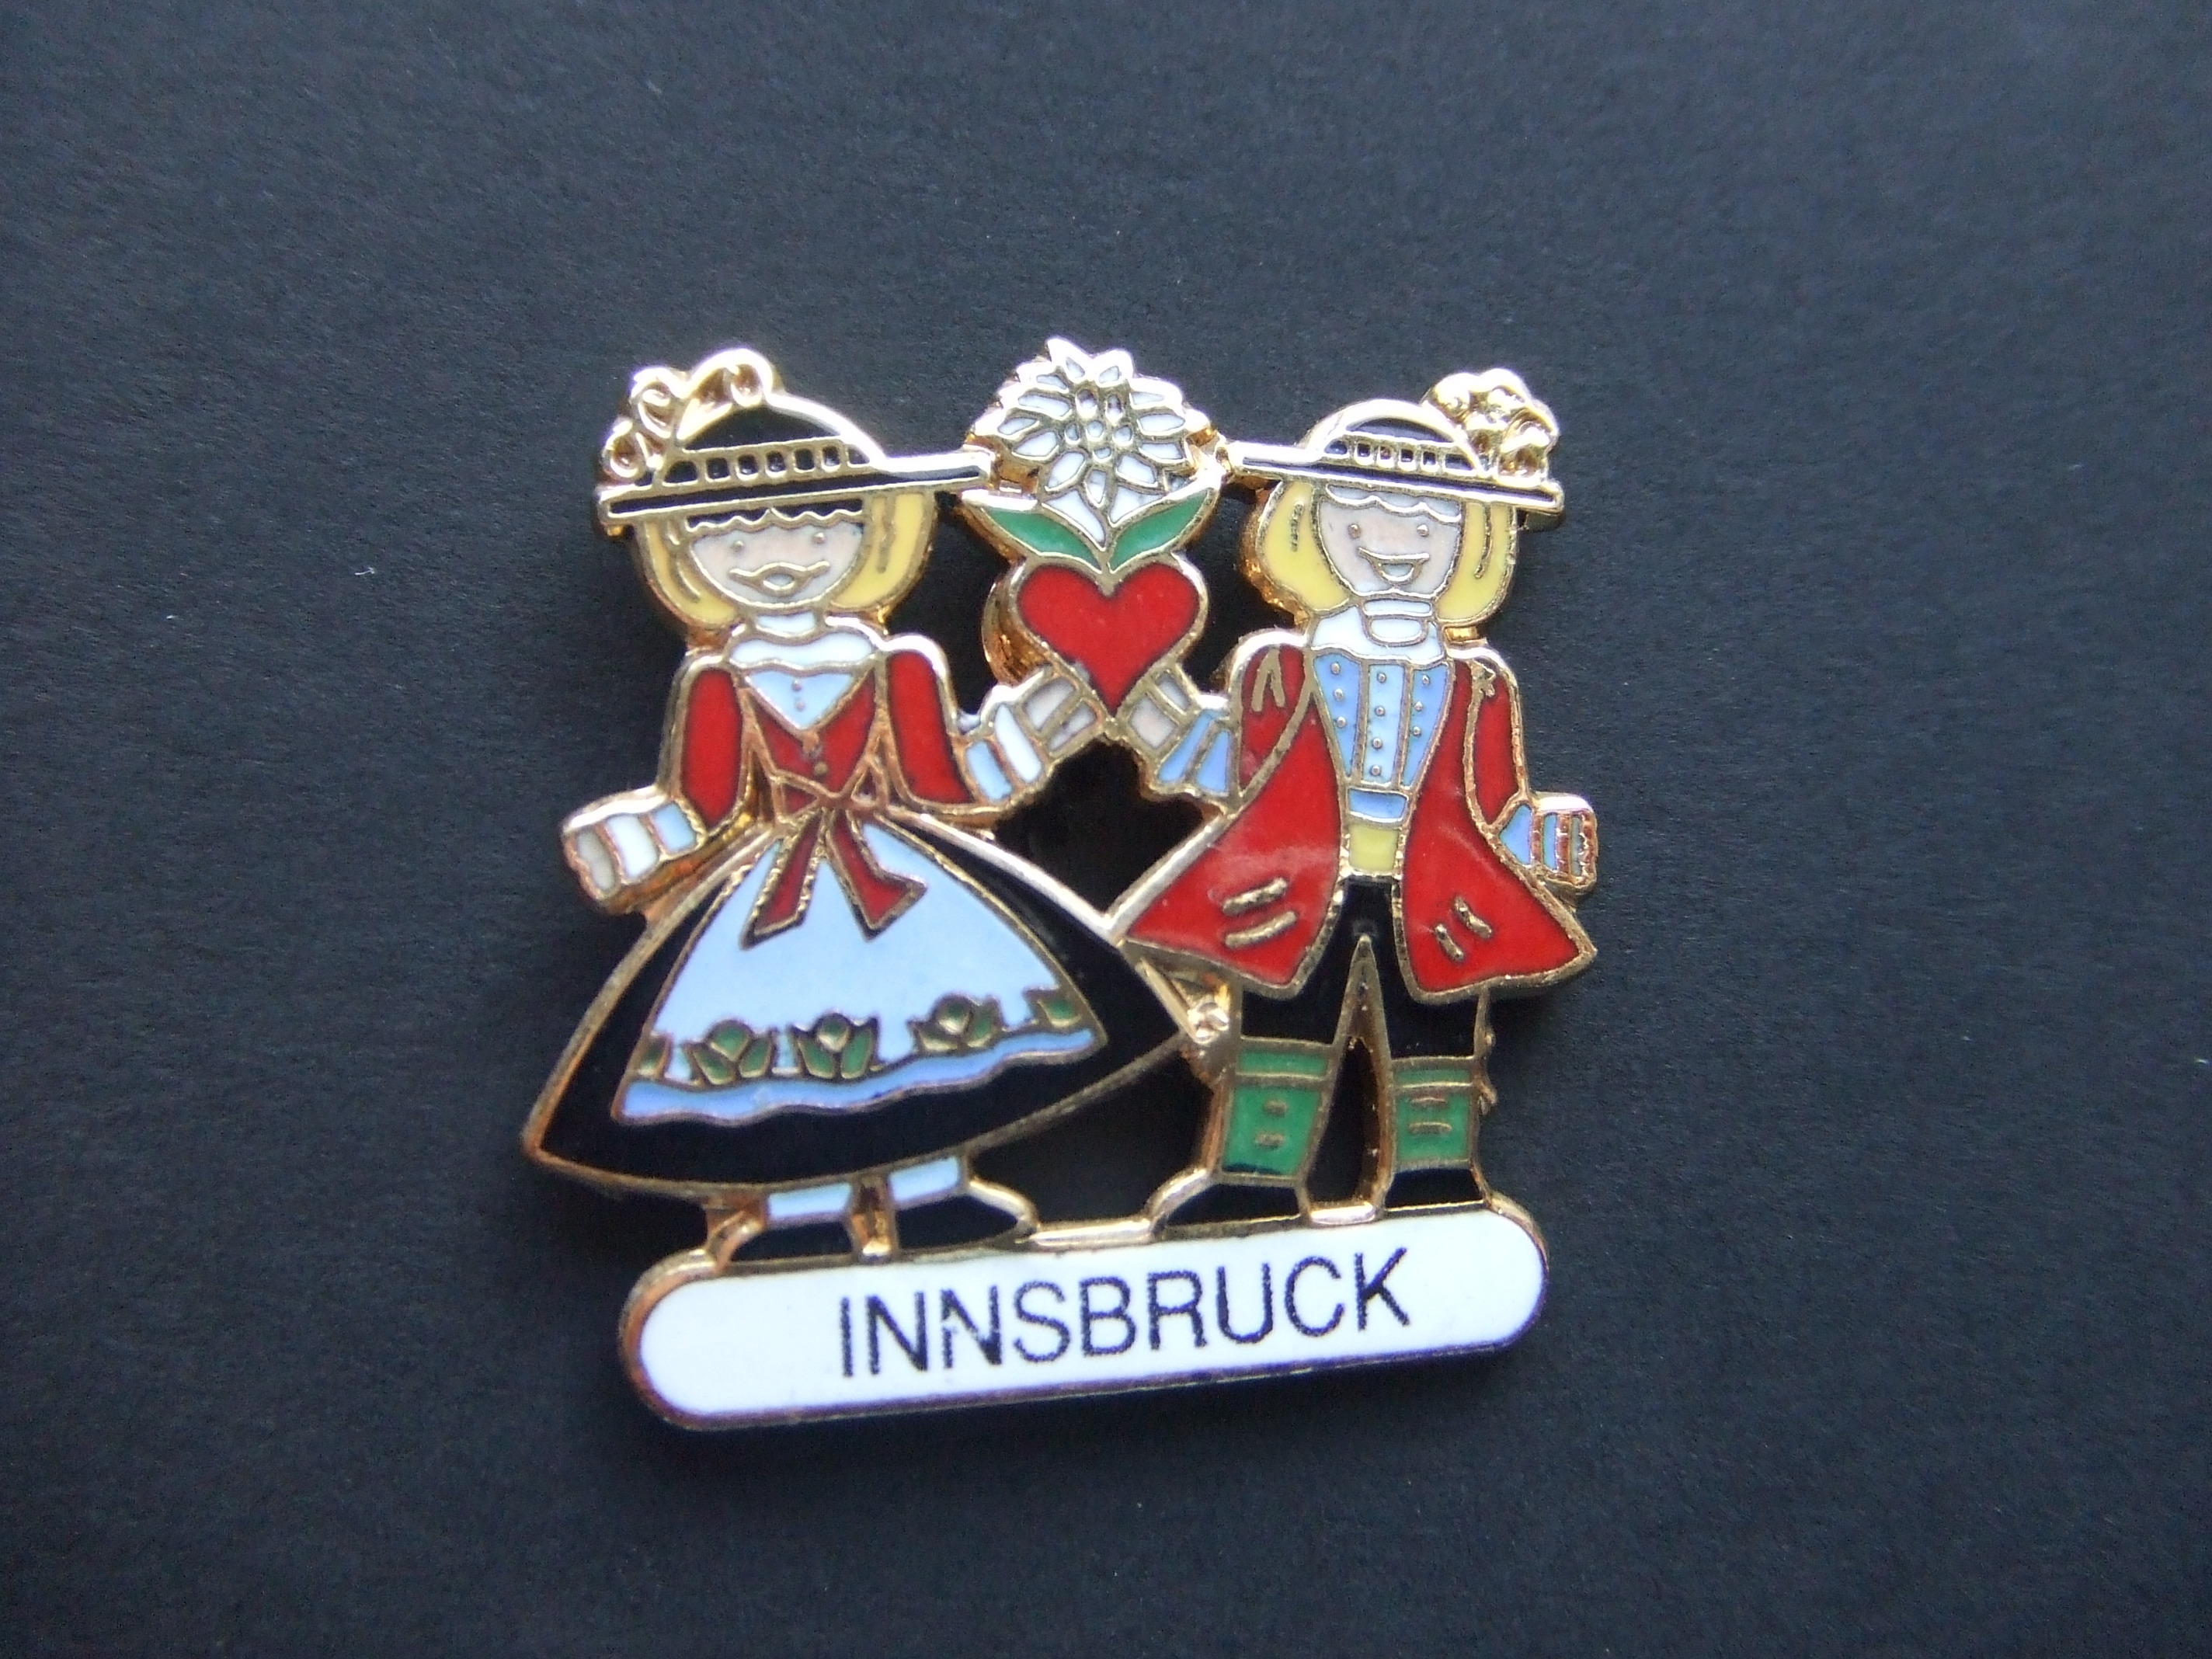 Innsbruck Oostenrijk Souvenir klederdracht